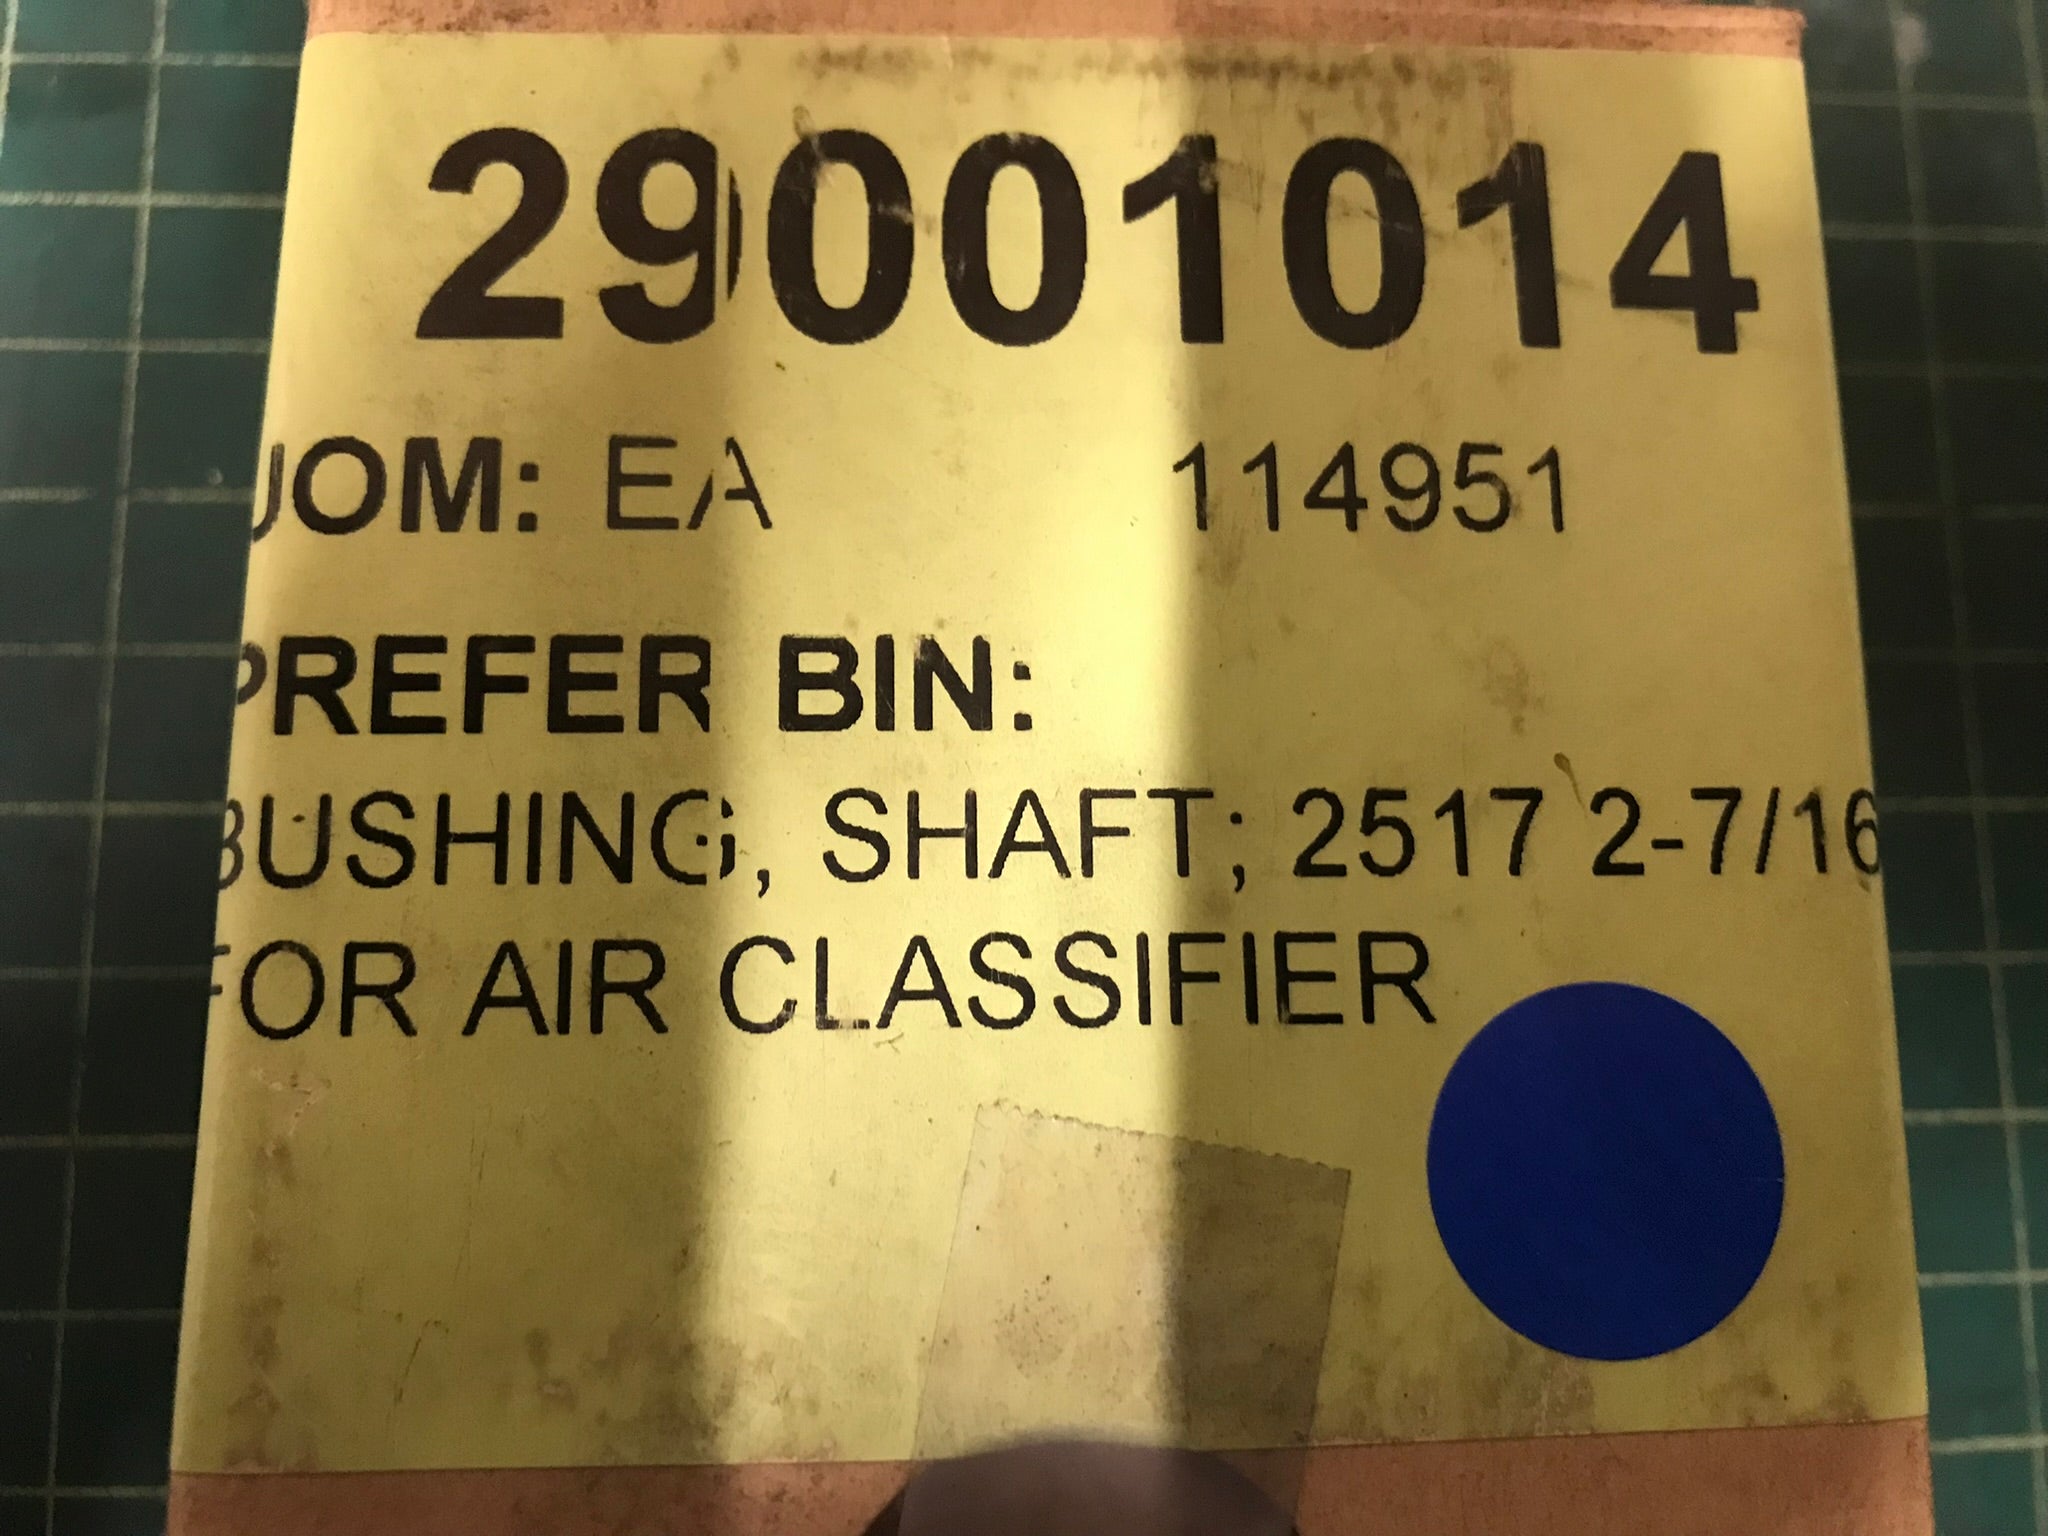 BUSHING, SHAFT; 2517 2-7/16"FOR AIR CLASSIFIER